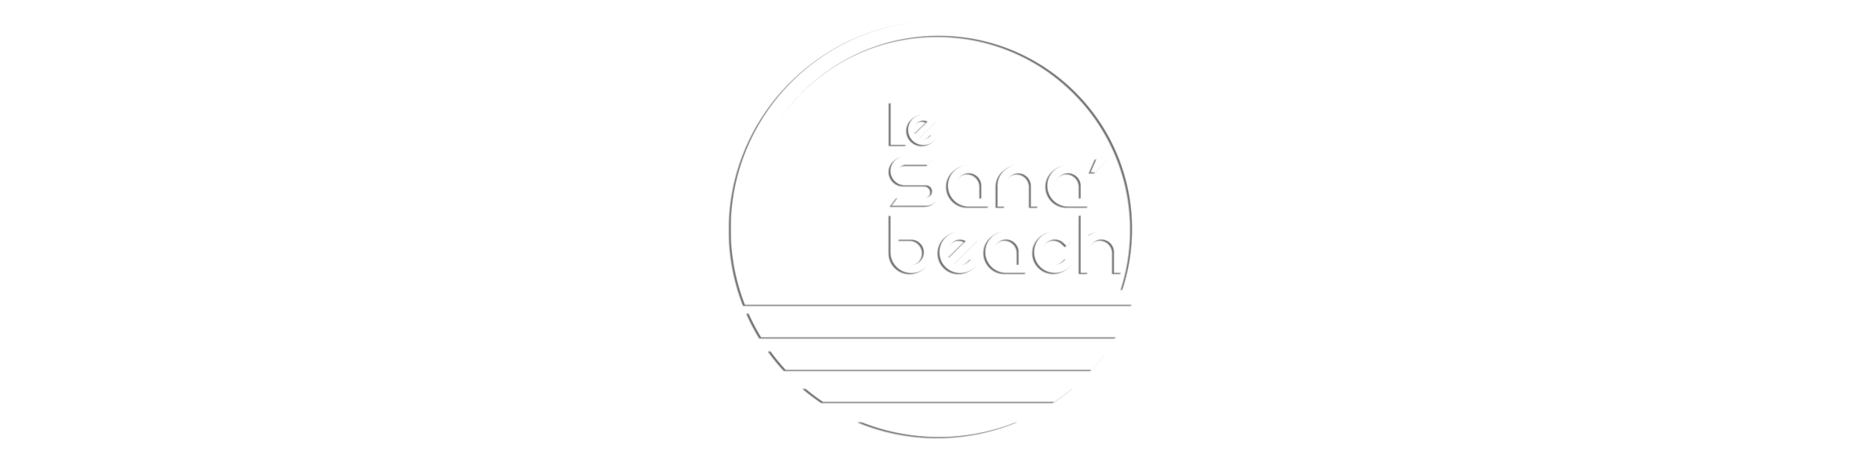 Le Sana'beach